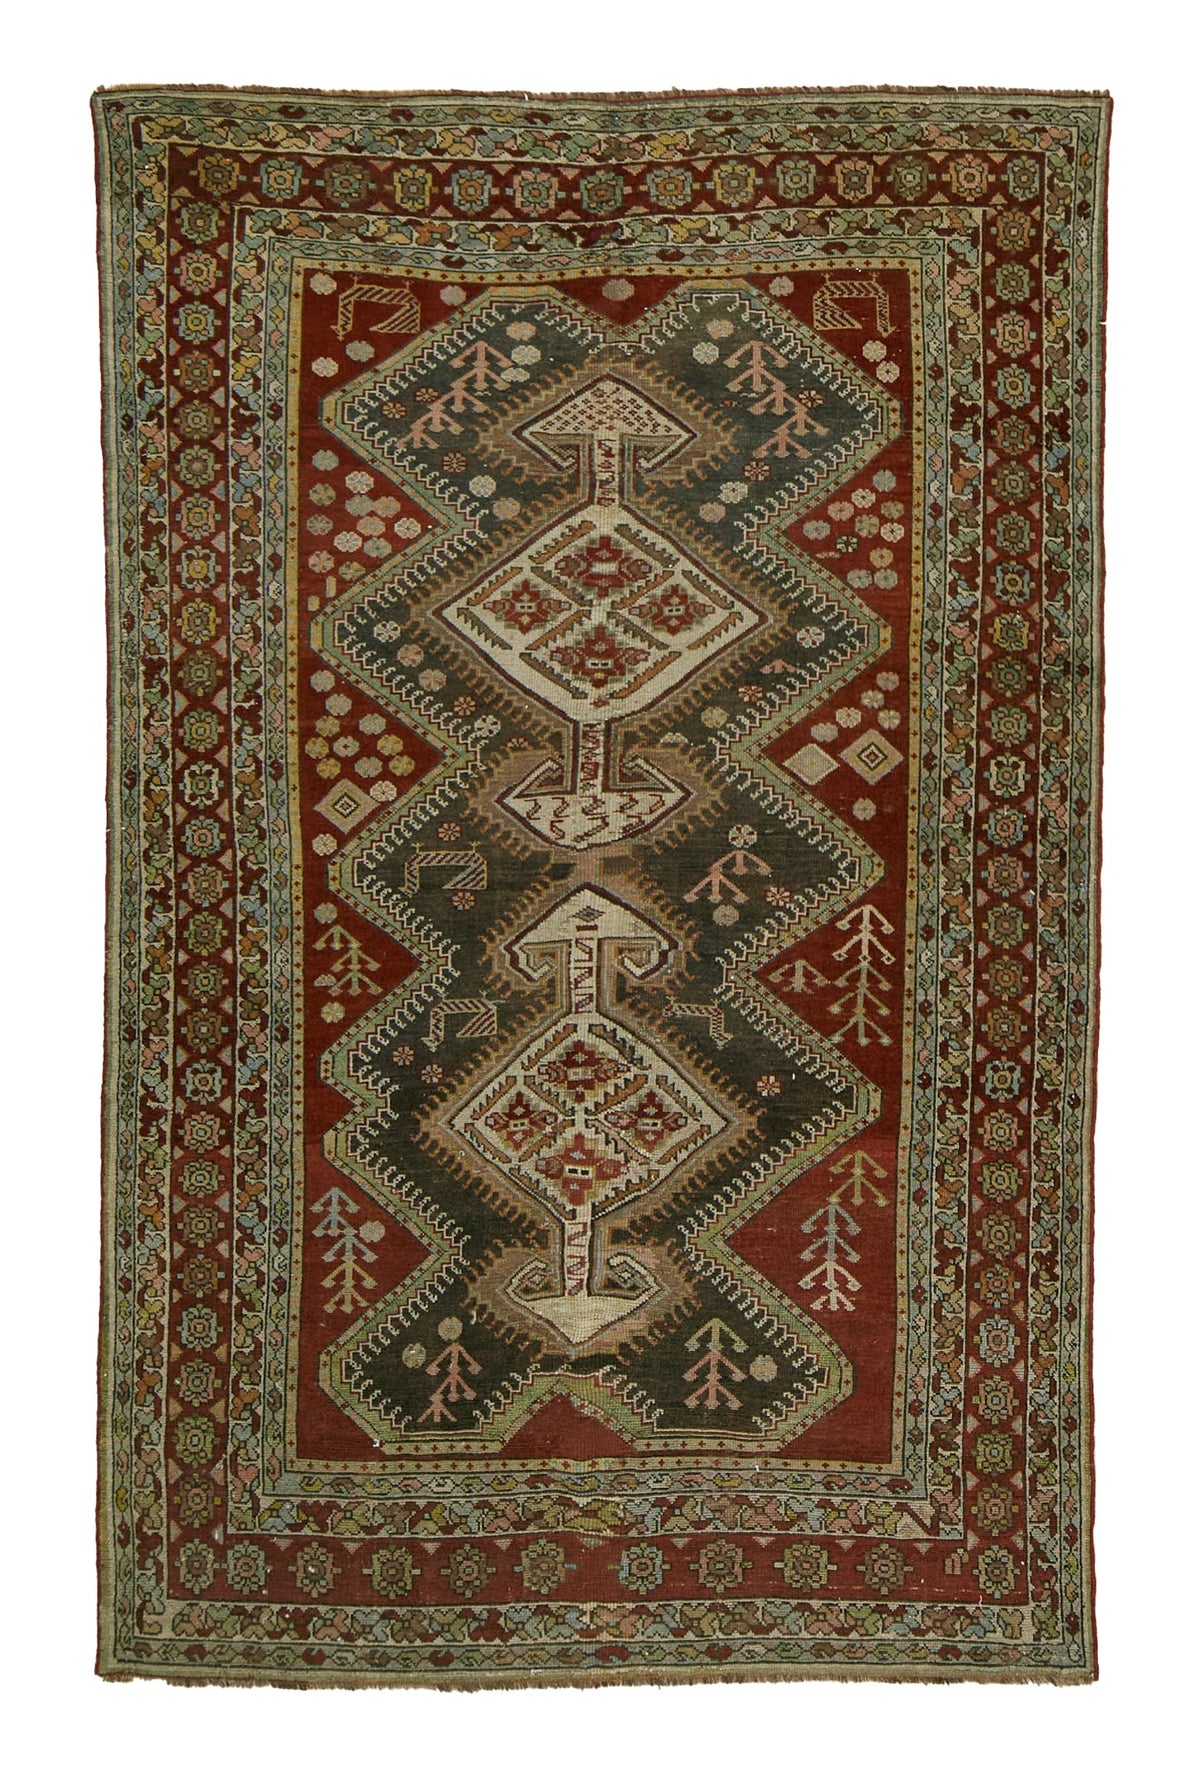 Akako - Timeless Beauty in Persian Weaving | Kuden Rugs